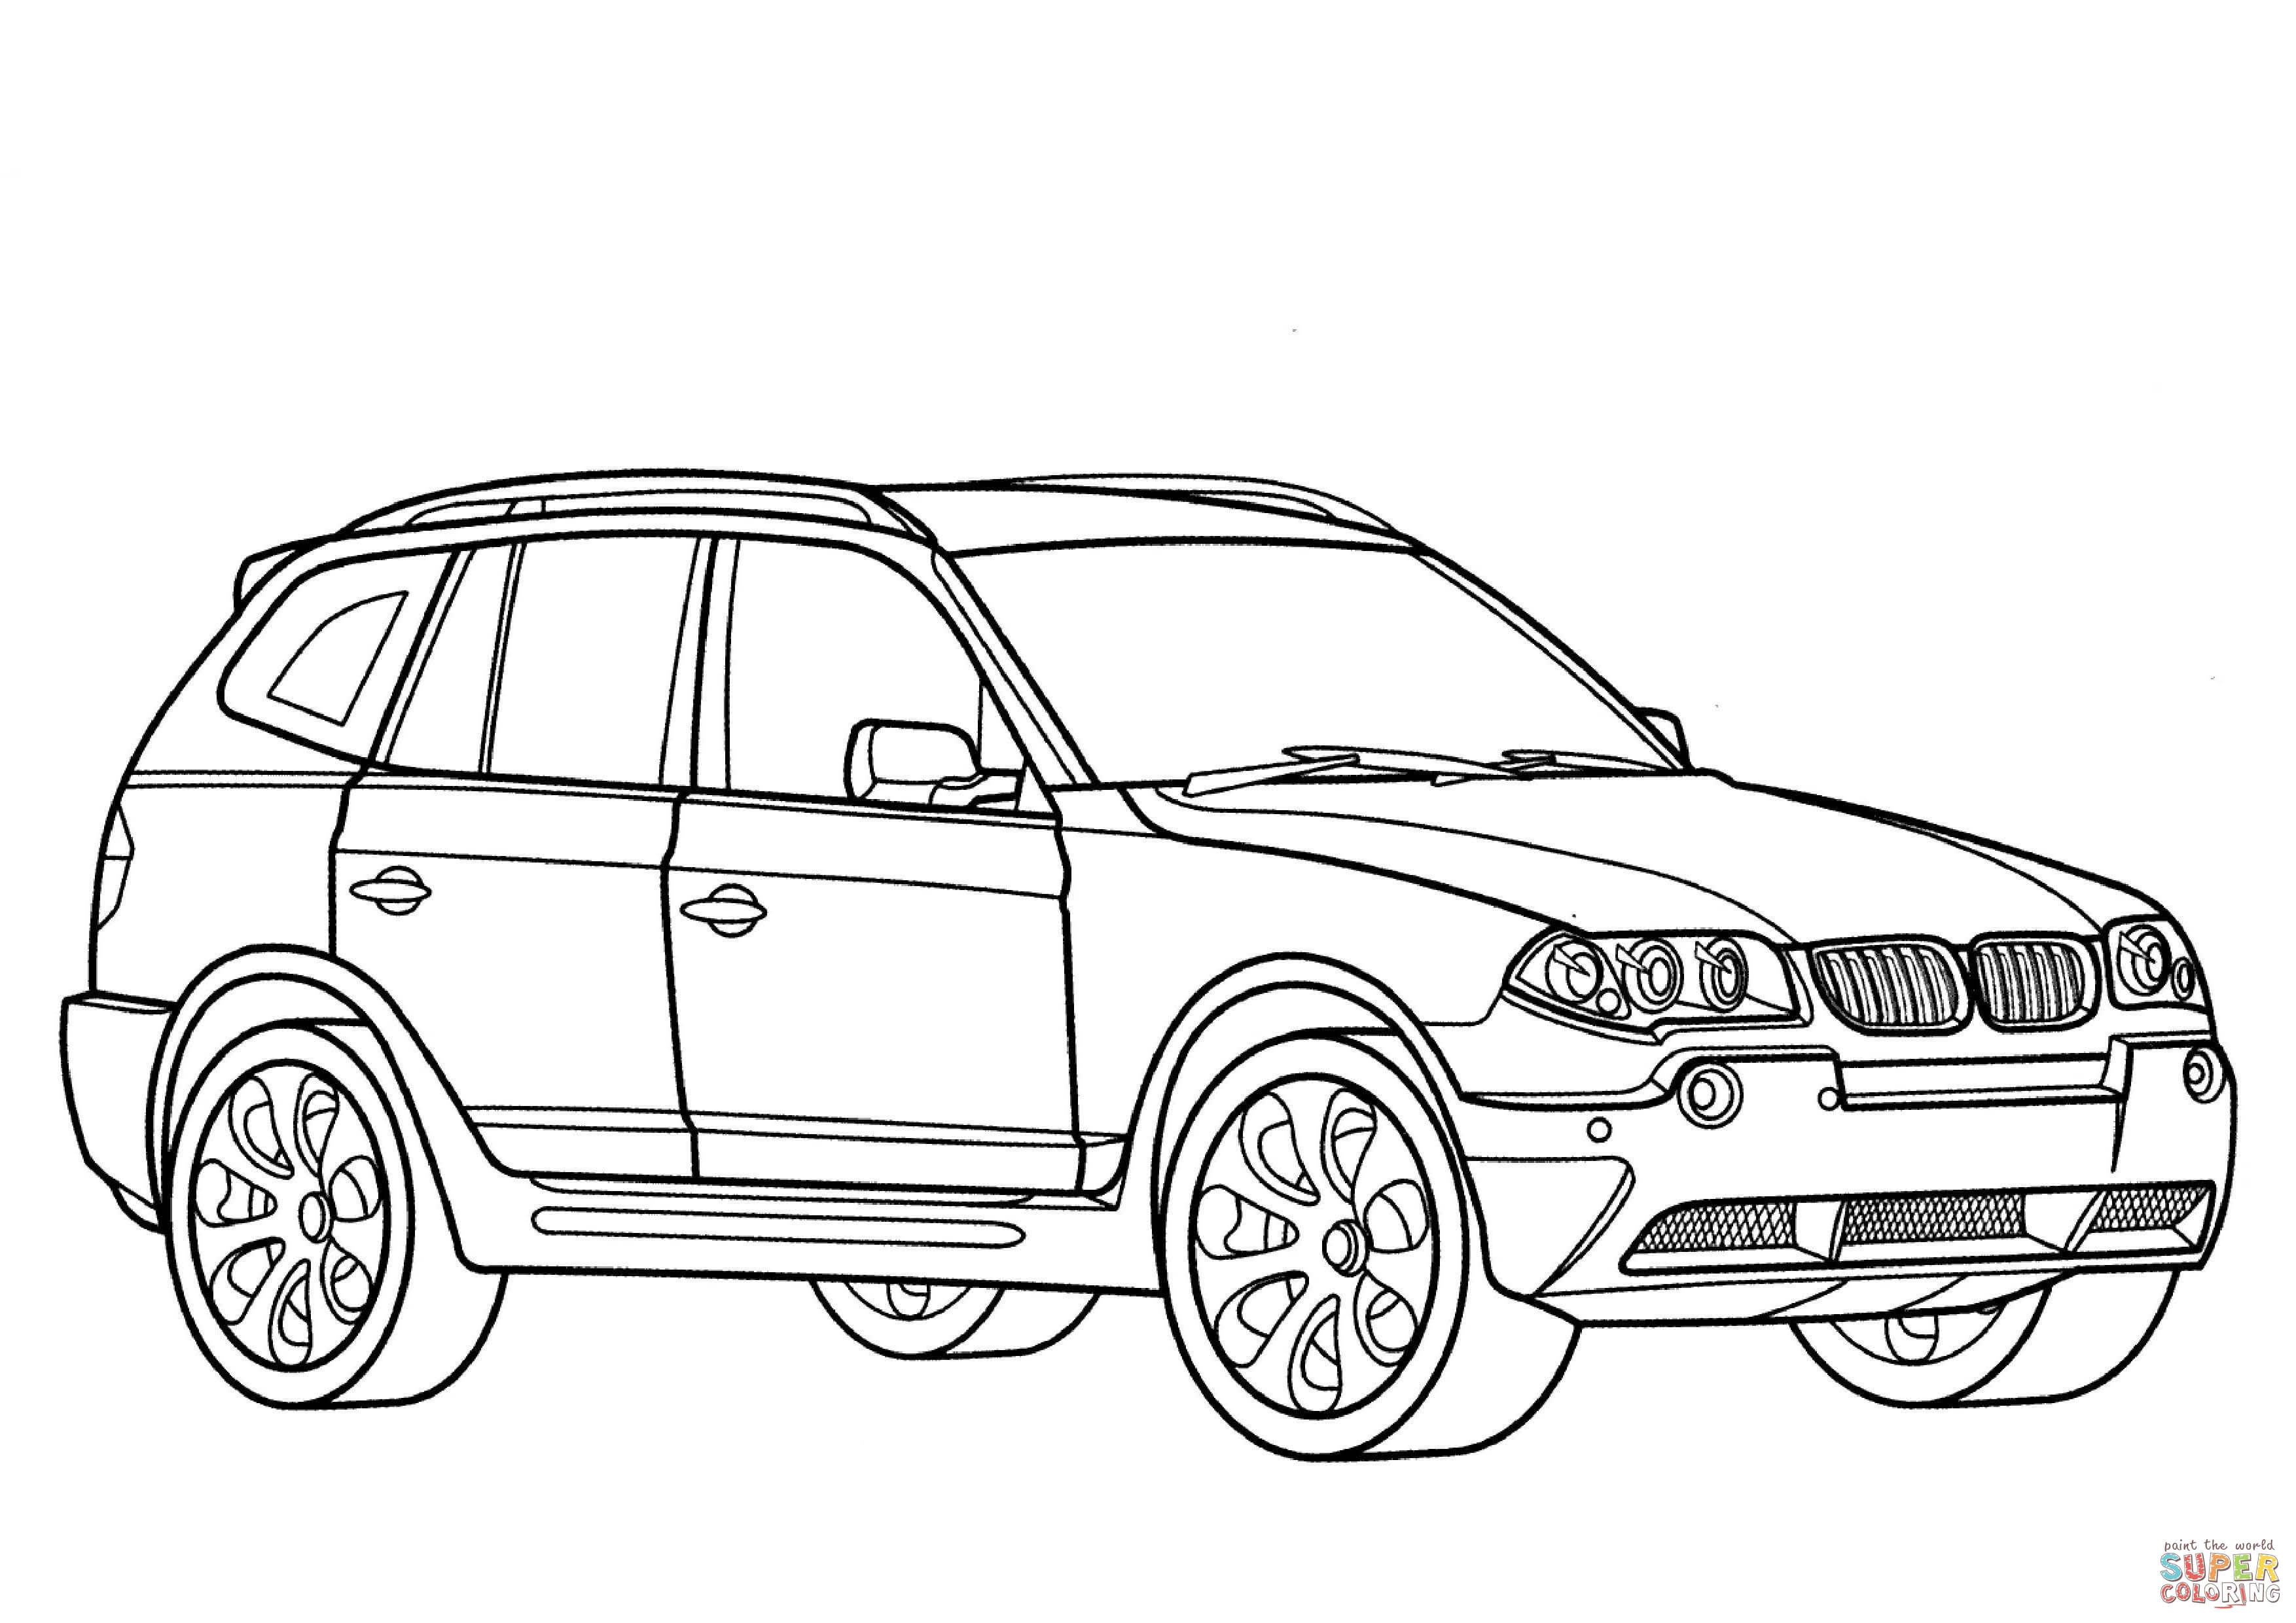 Dessin un beau dessin de BMW a colorier niveau débutant